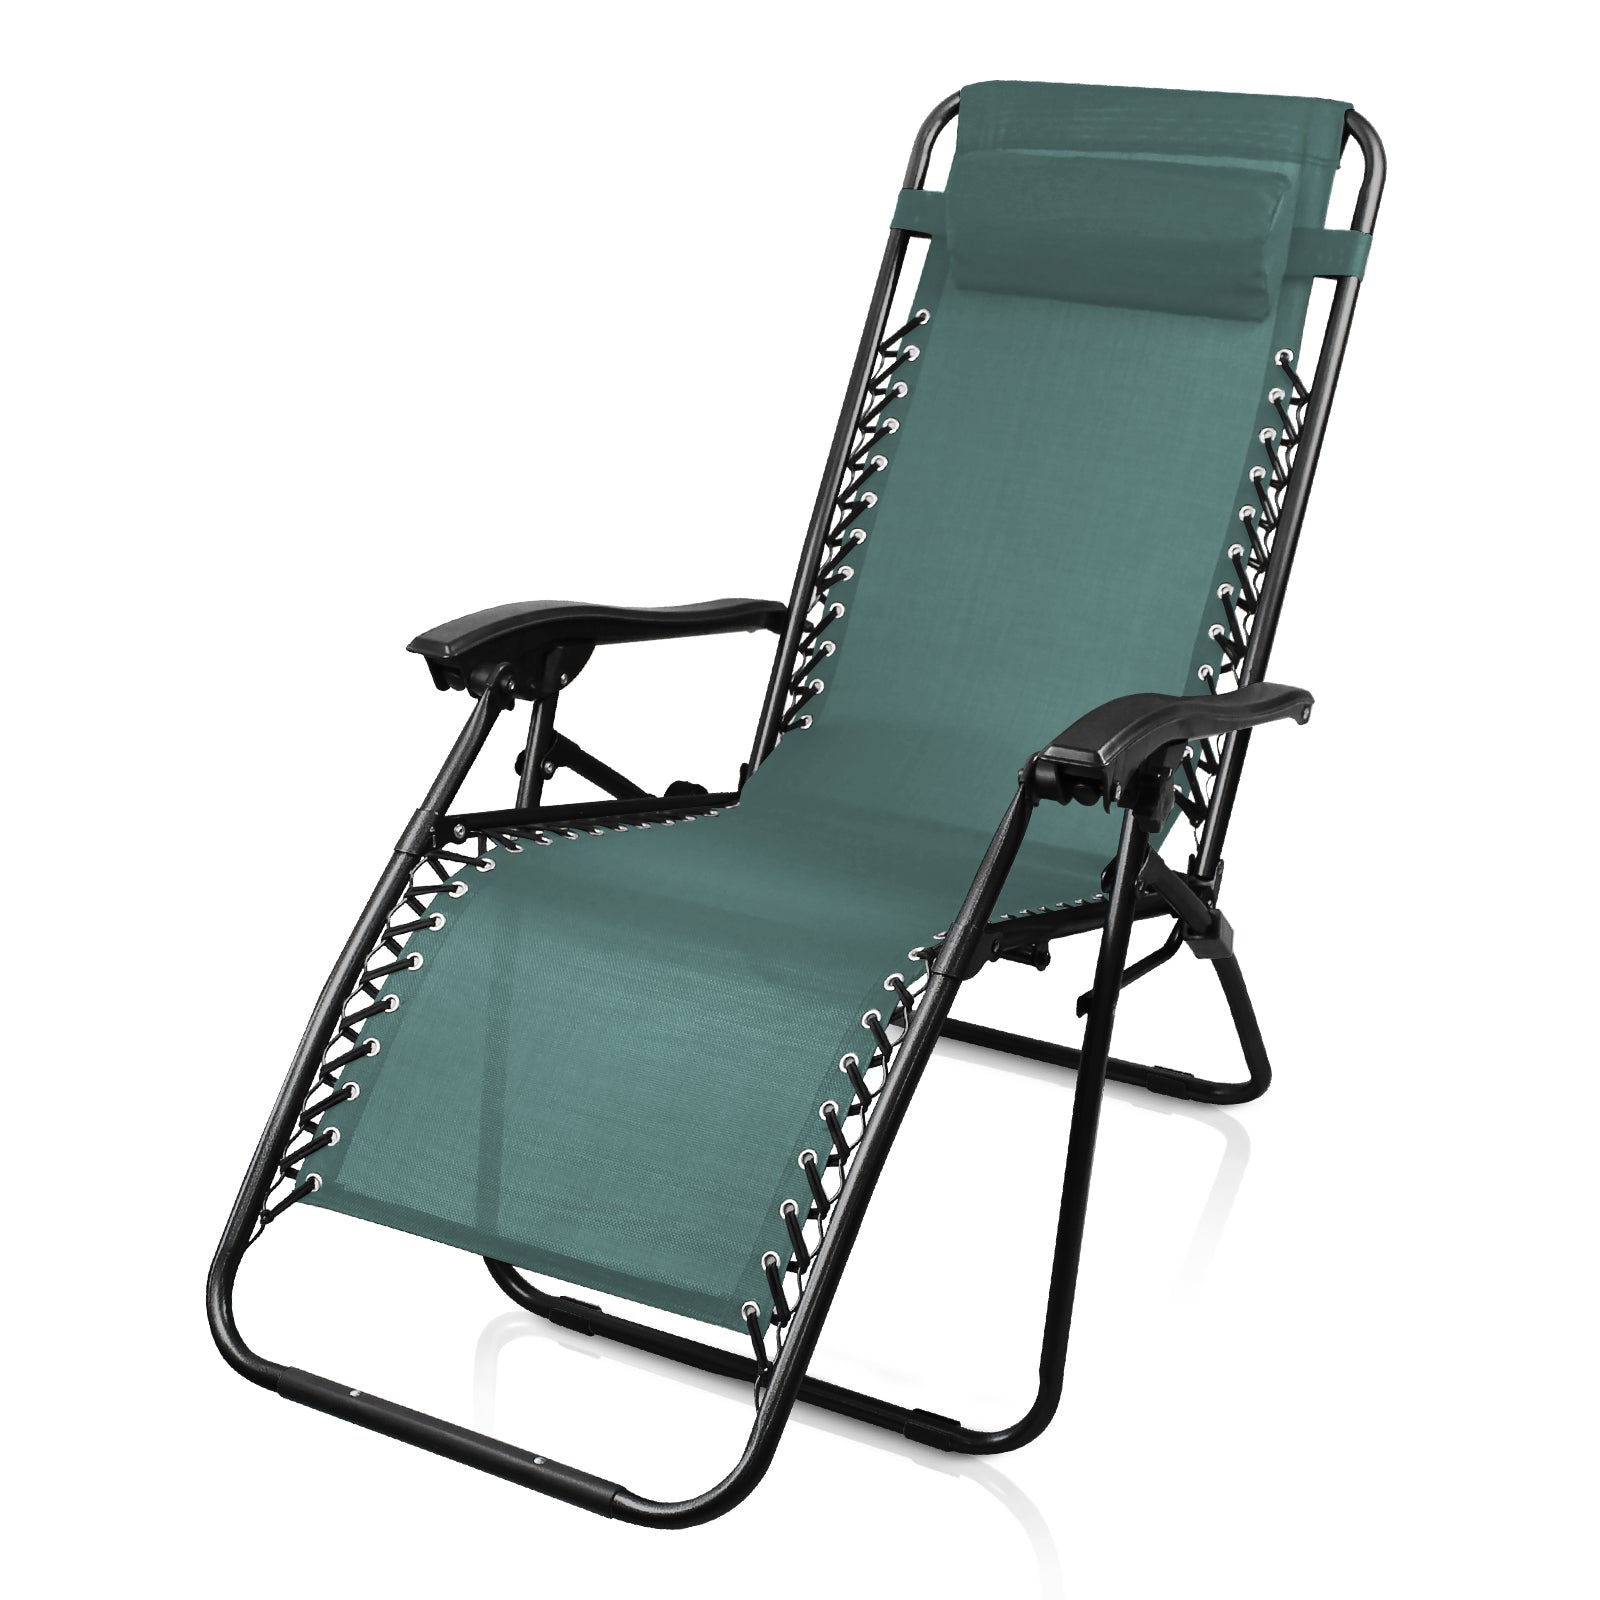 Reclining-Deck-Chair-Green-Foldable-Beach-Deckchair-Sun-Lounger-with-Removable-Headrest-Outdoor-Relax-Armchair-for-Garden-Camping-165x112x65cm